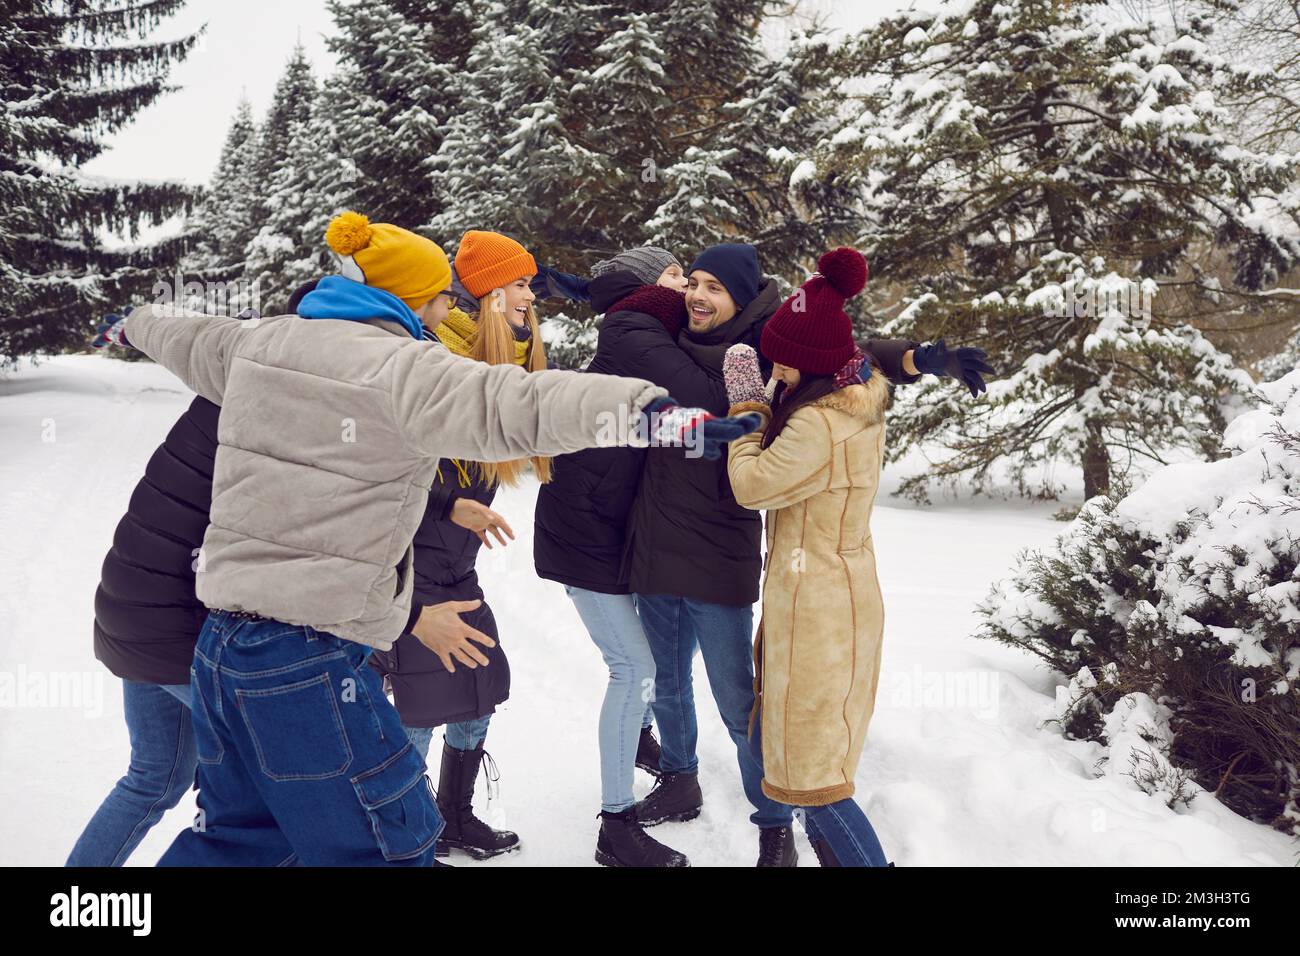 Des amis joyeux se bernent et rient tout en se faisant un bon moment dans un parc municipal couvert de neige ou dans une forêt d'hiver. Banque D'Images